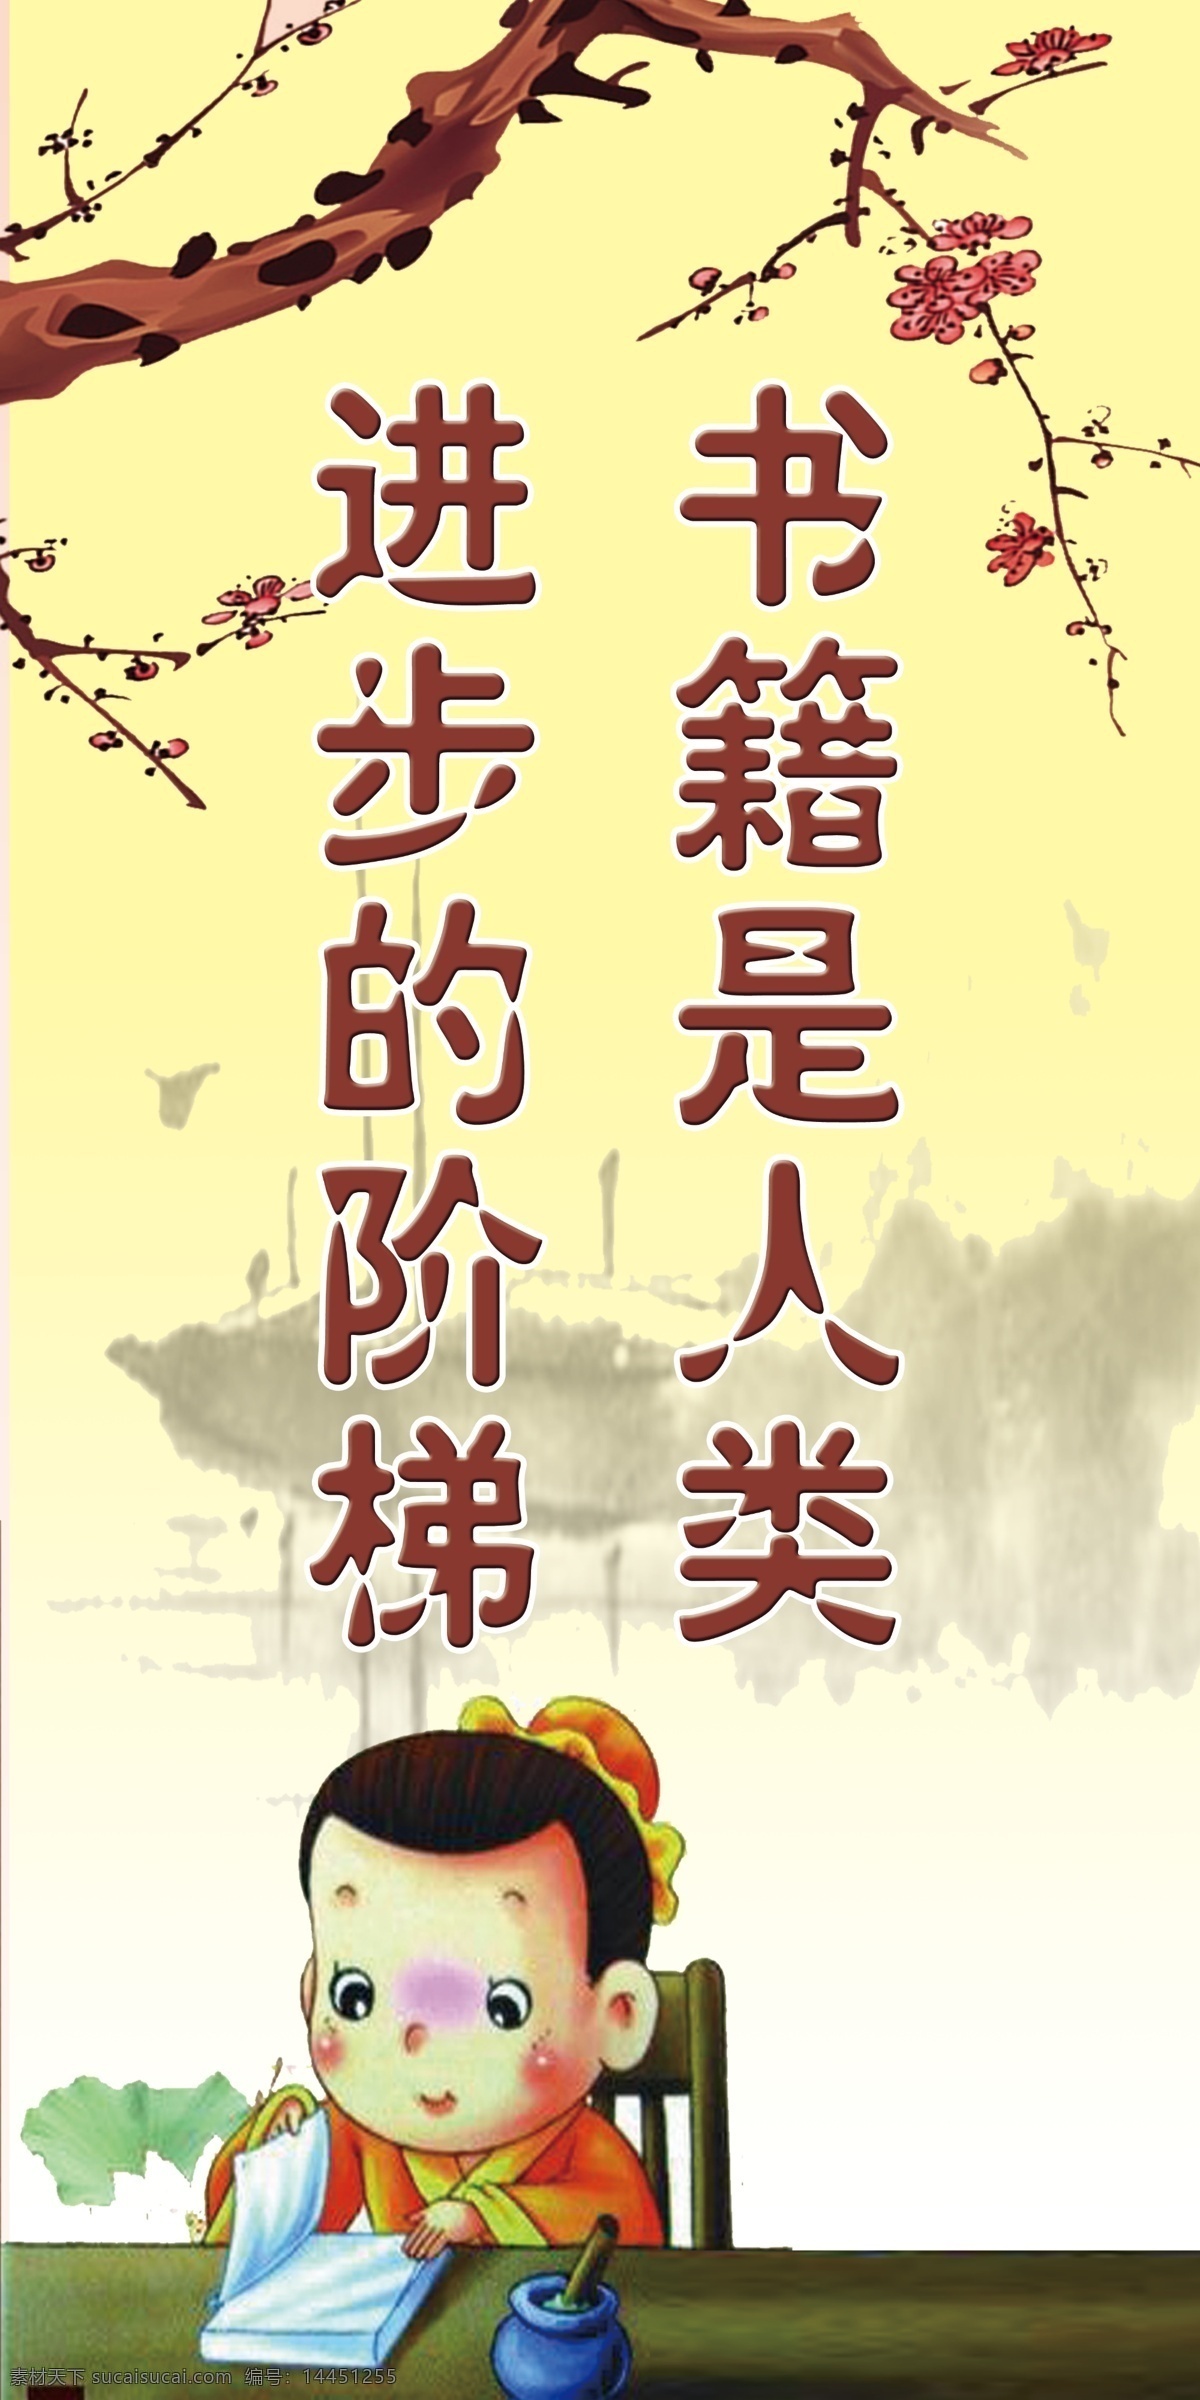 名人名言 标语 学校展板 书 人类 进步 阶梯 中国风 古代设计